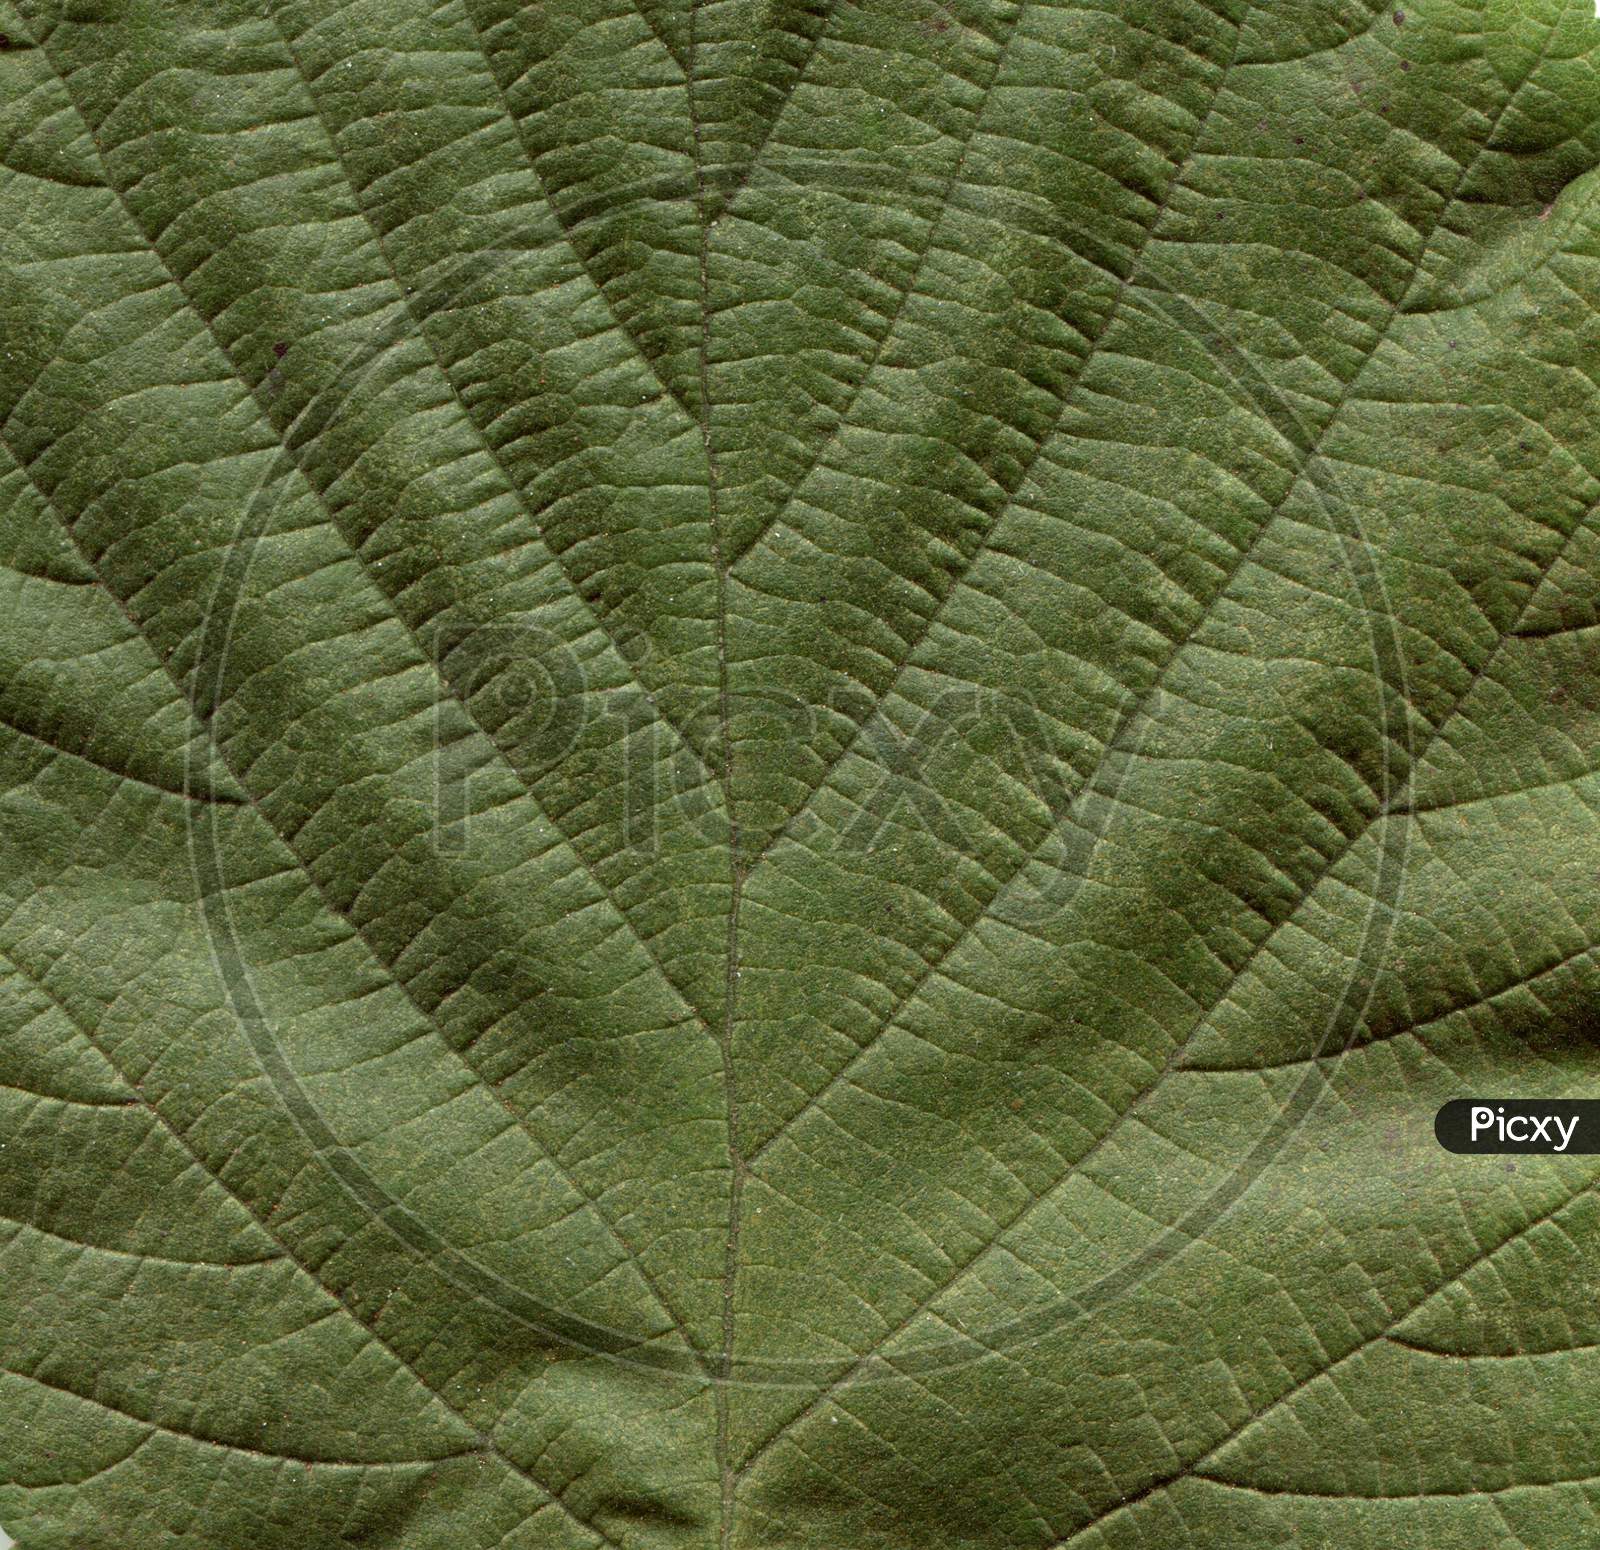 Hazel Tree Leaf